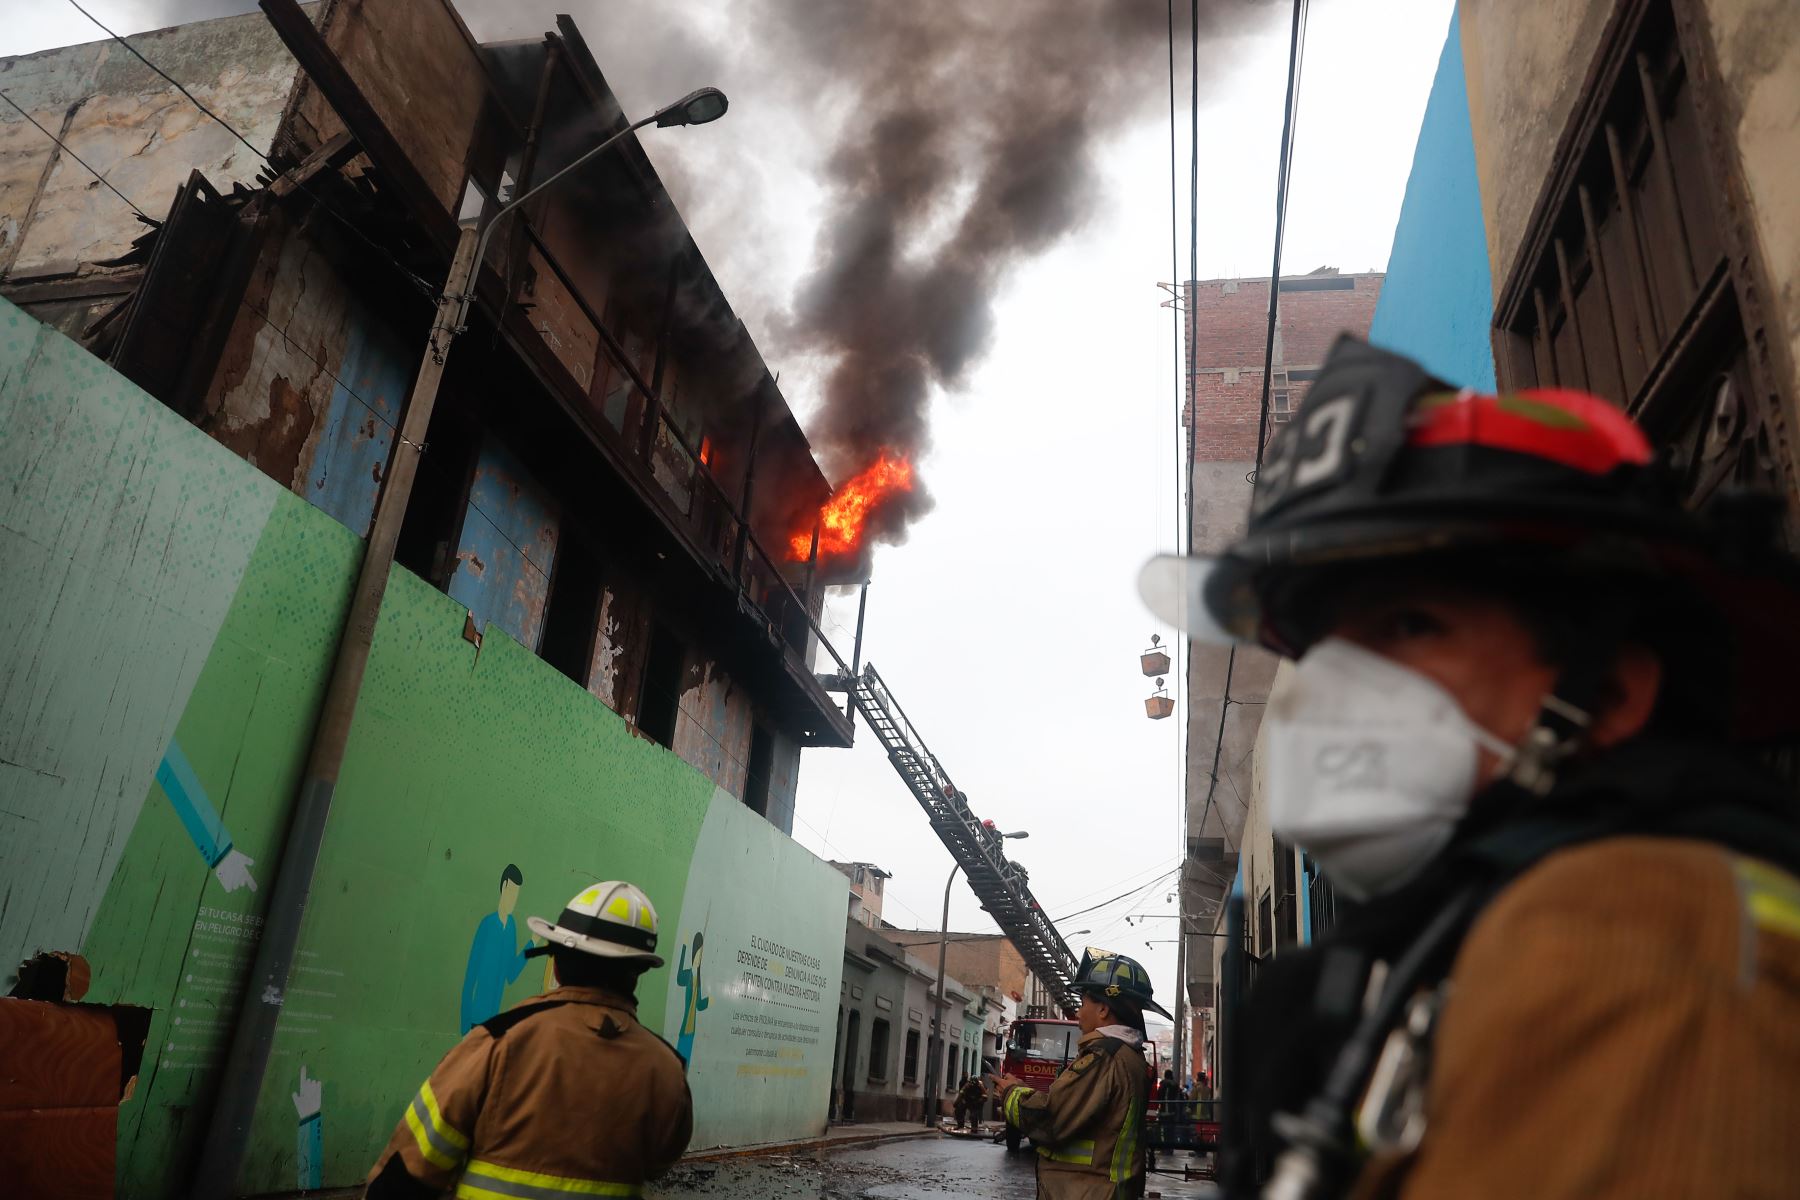 La emergencia fue atendida por unas15 unidades de los bomberos, entre ambulancias, cisternas y vehículos de rescate. Foto: ANDINA/Renato Pajuelo